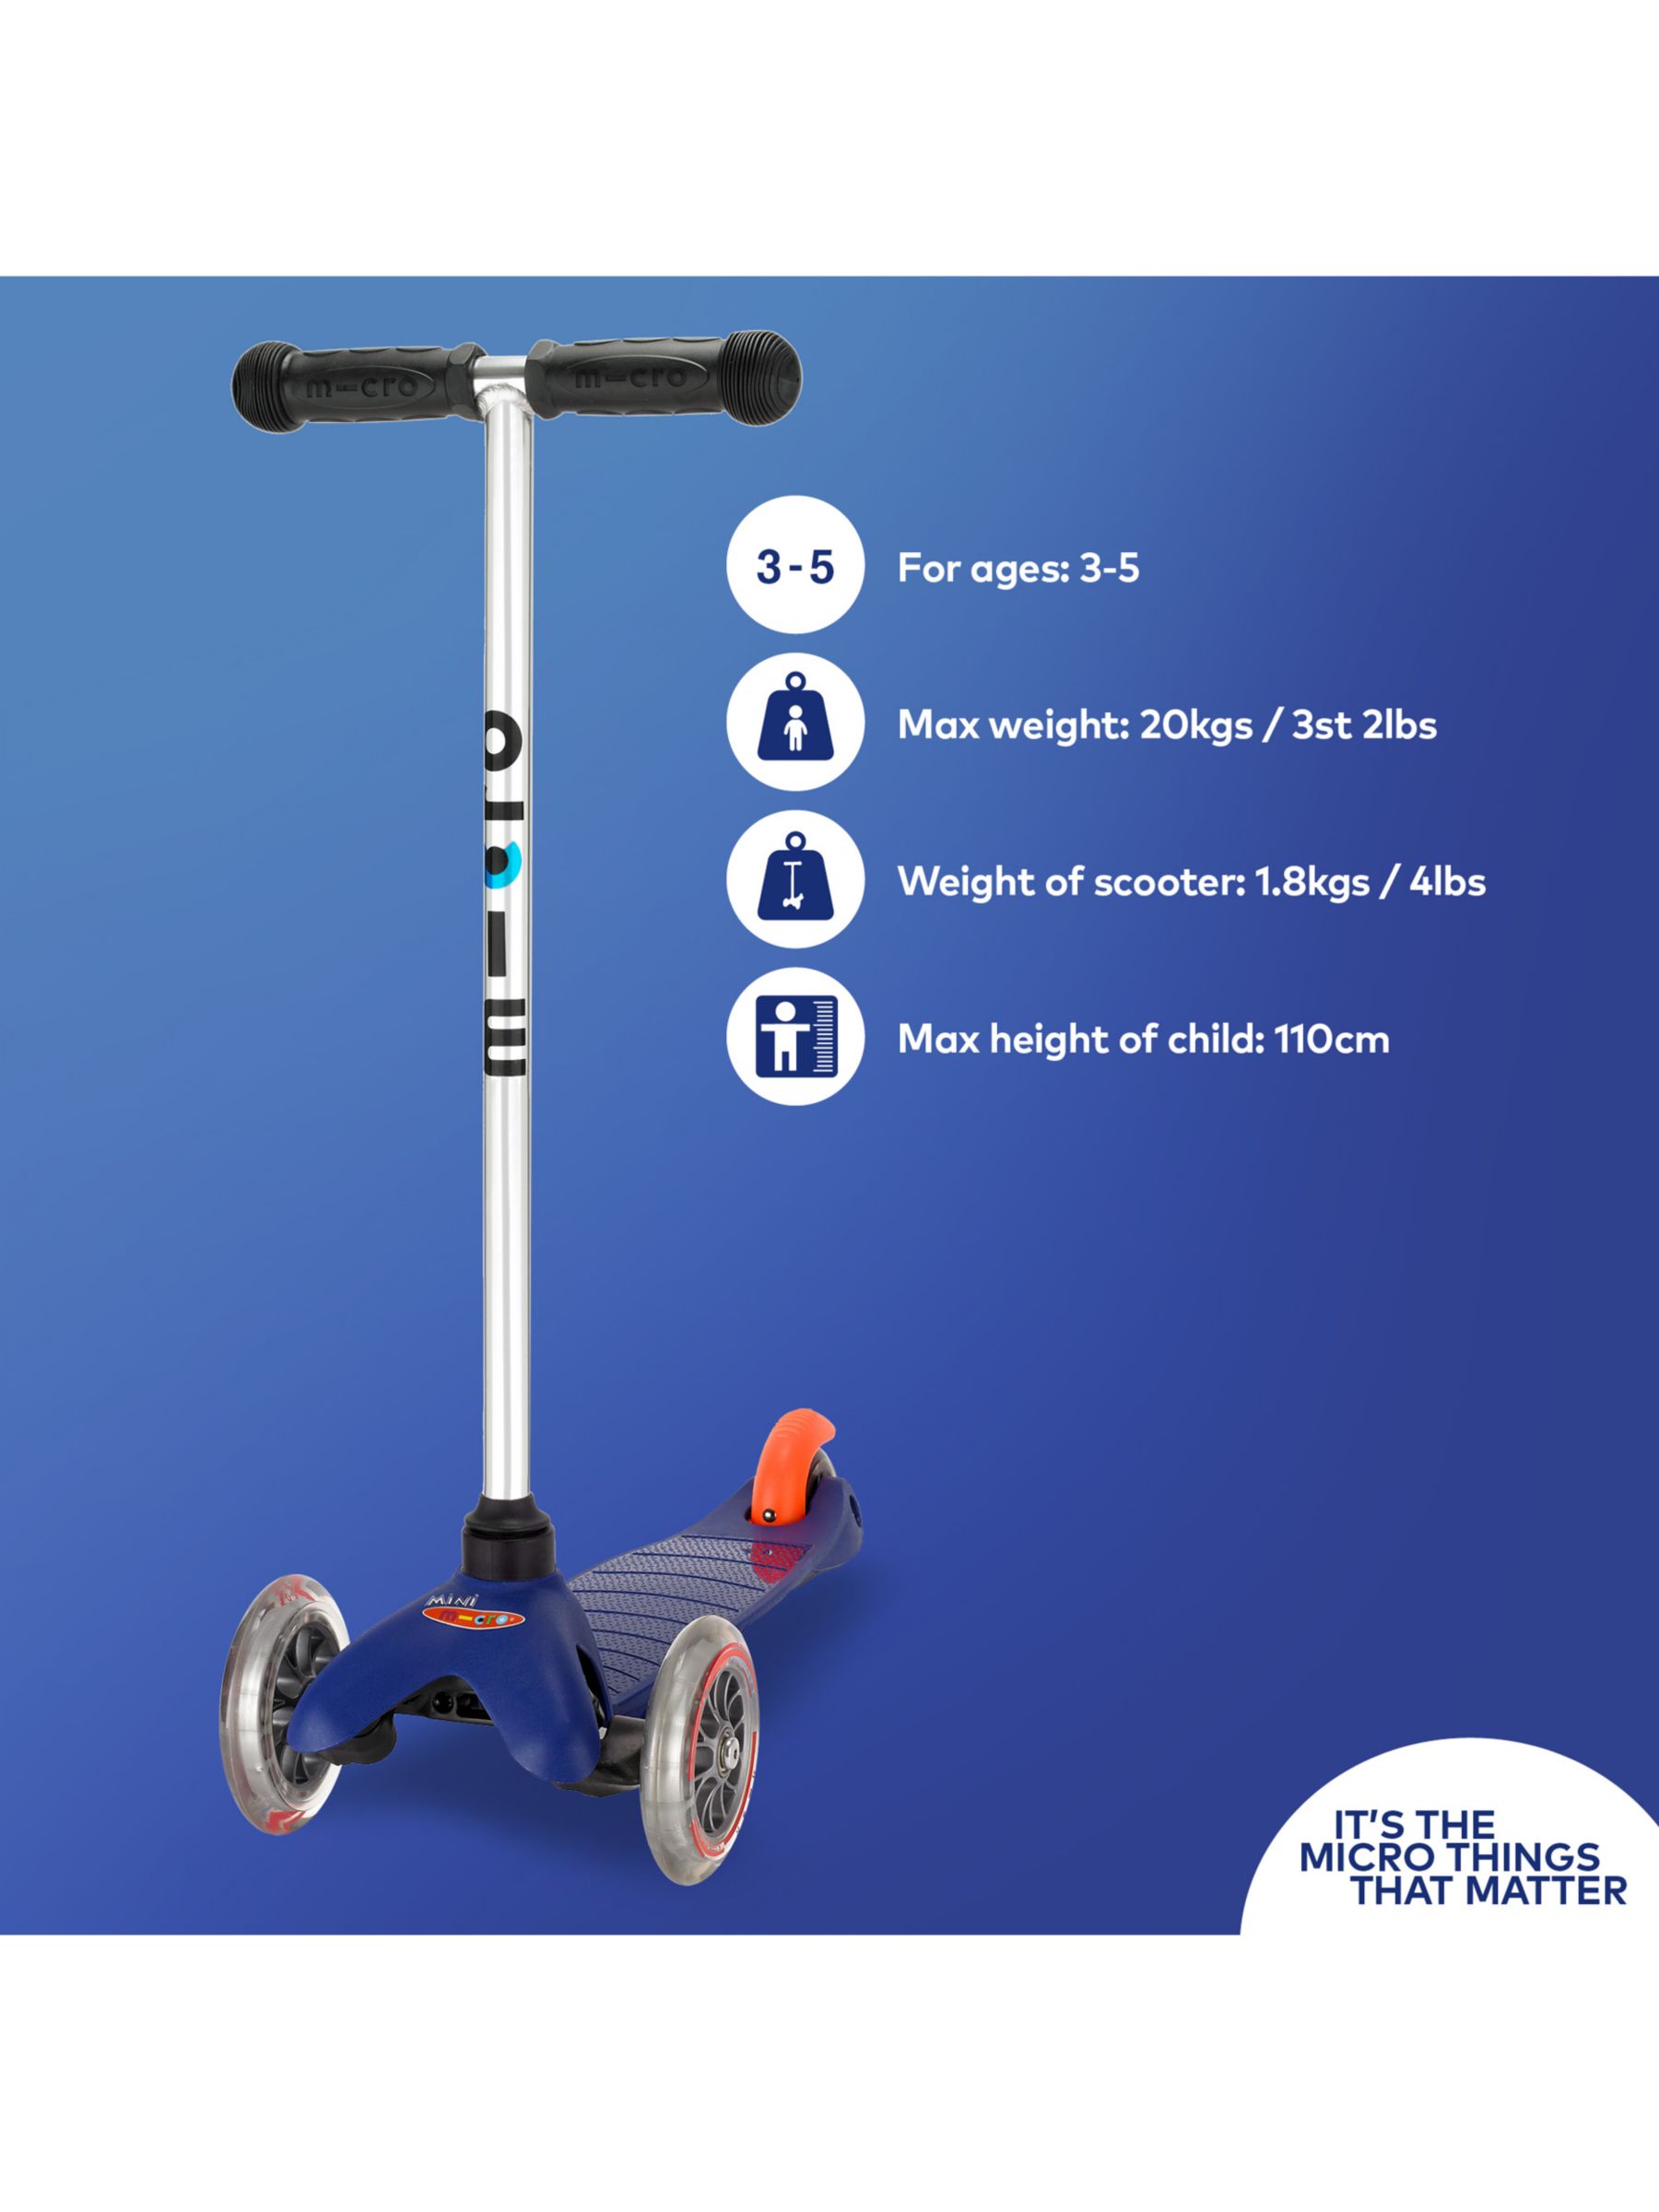 mini micro scooter age